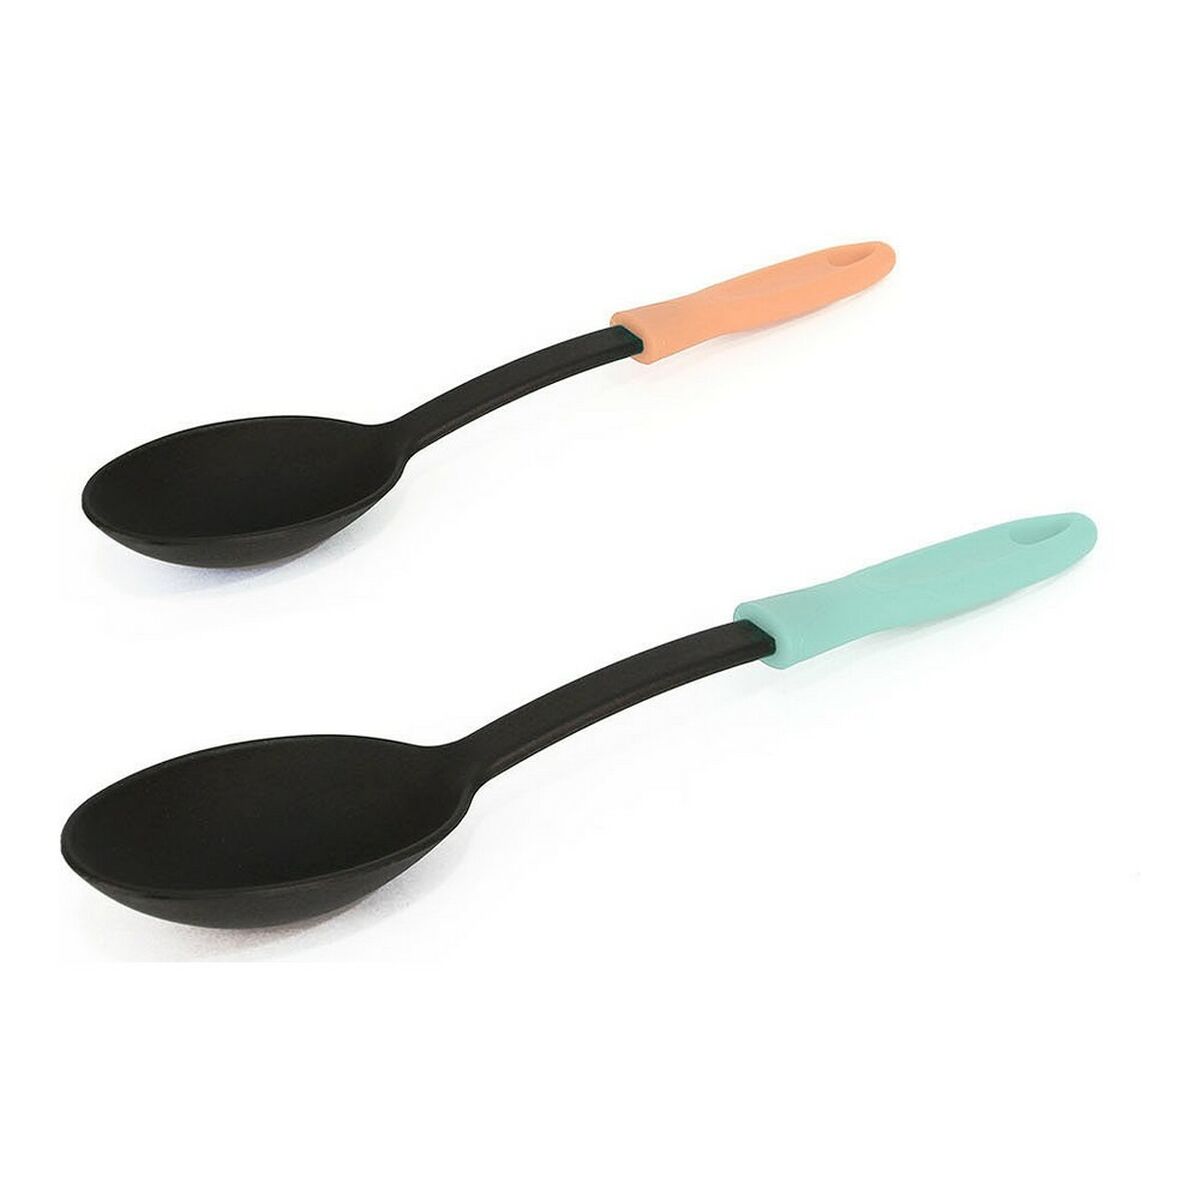 Spoon (33 cm)